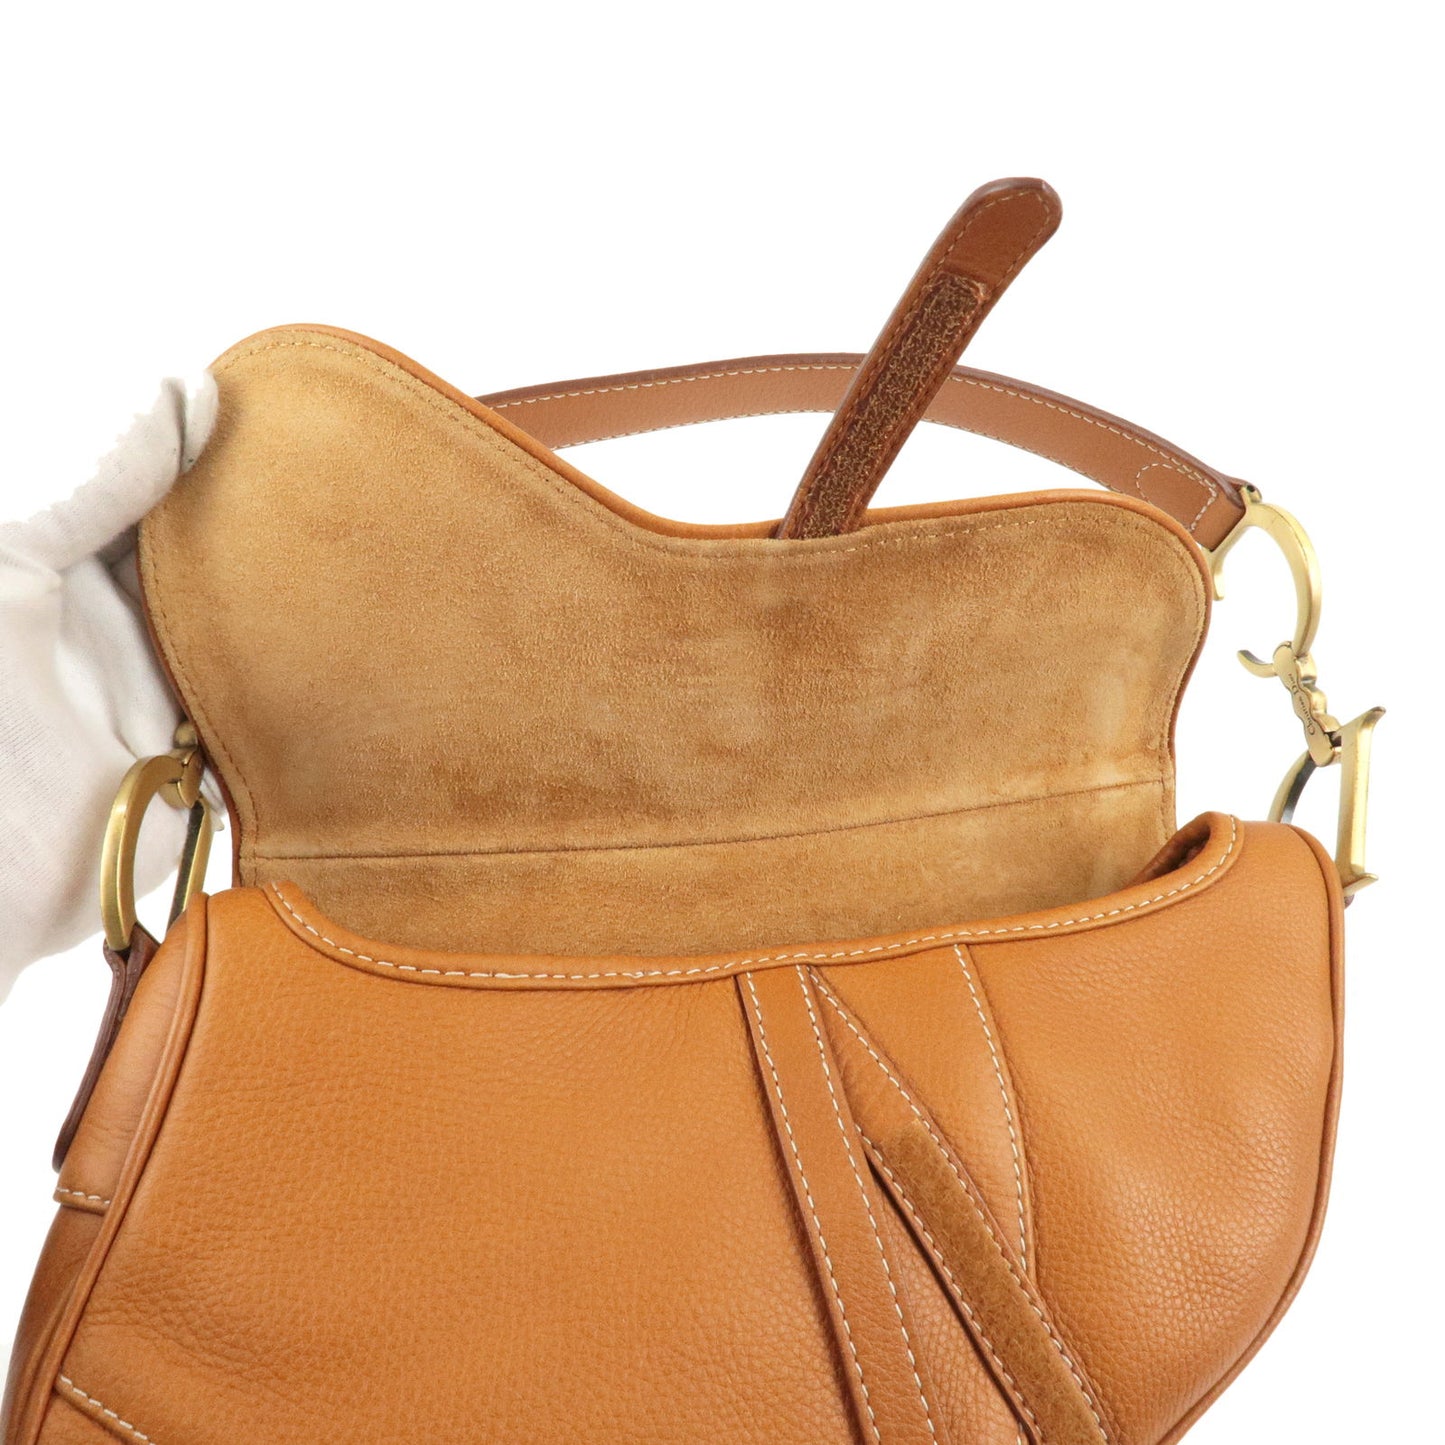 Christian Dior Saddle Bag Leather Shoulder Bag Light Brown